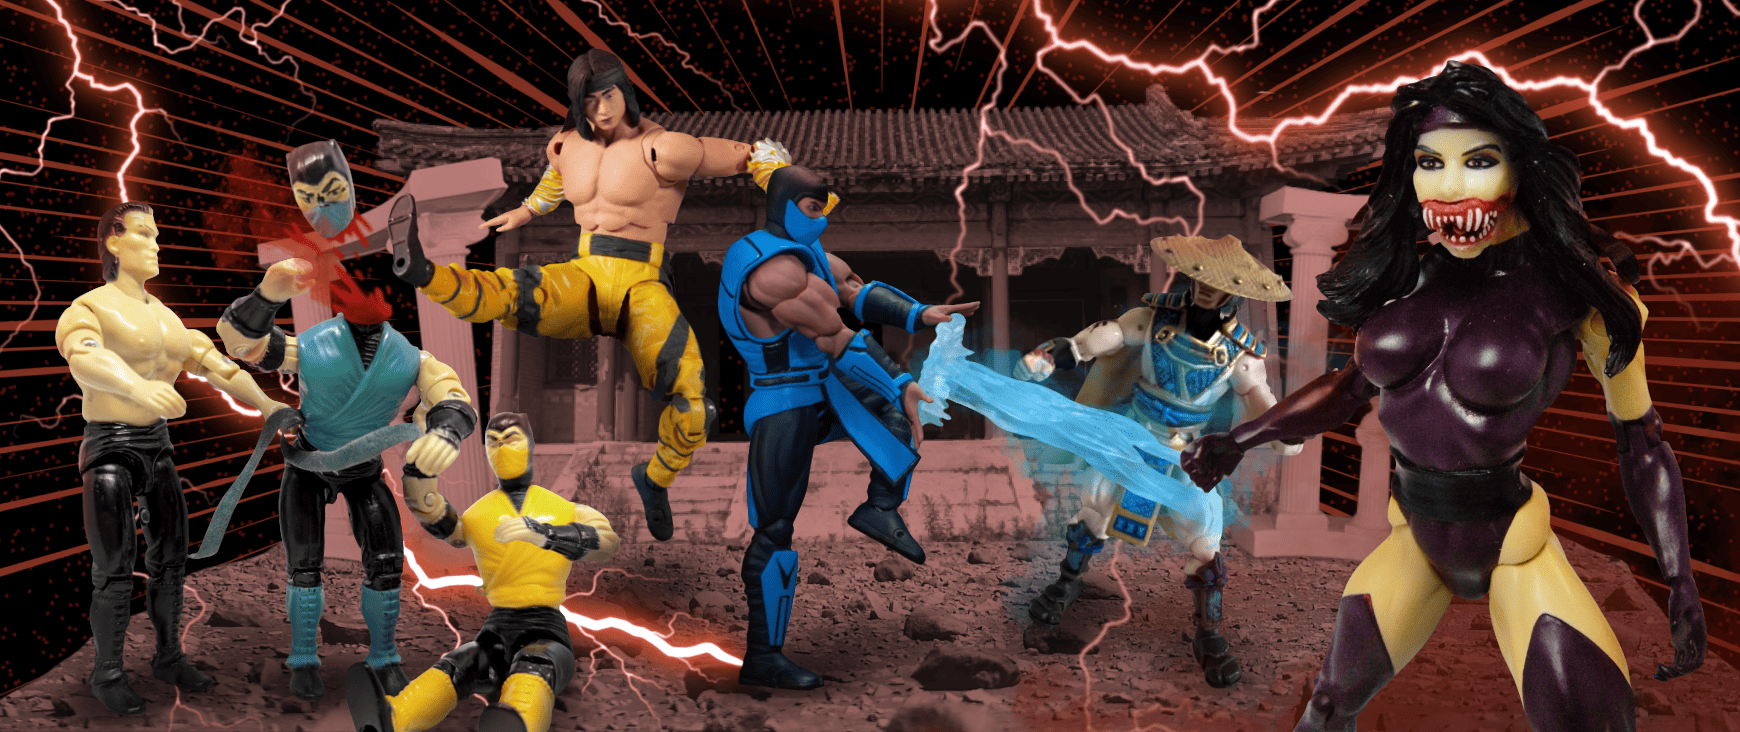 Mortal Kombat action figures